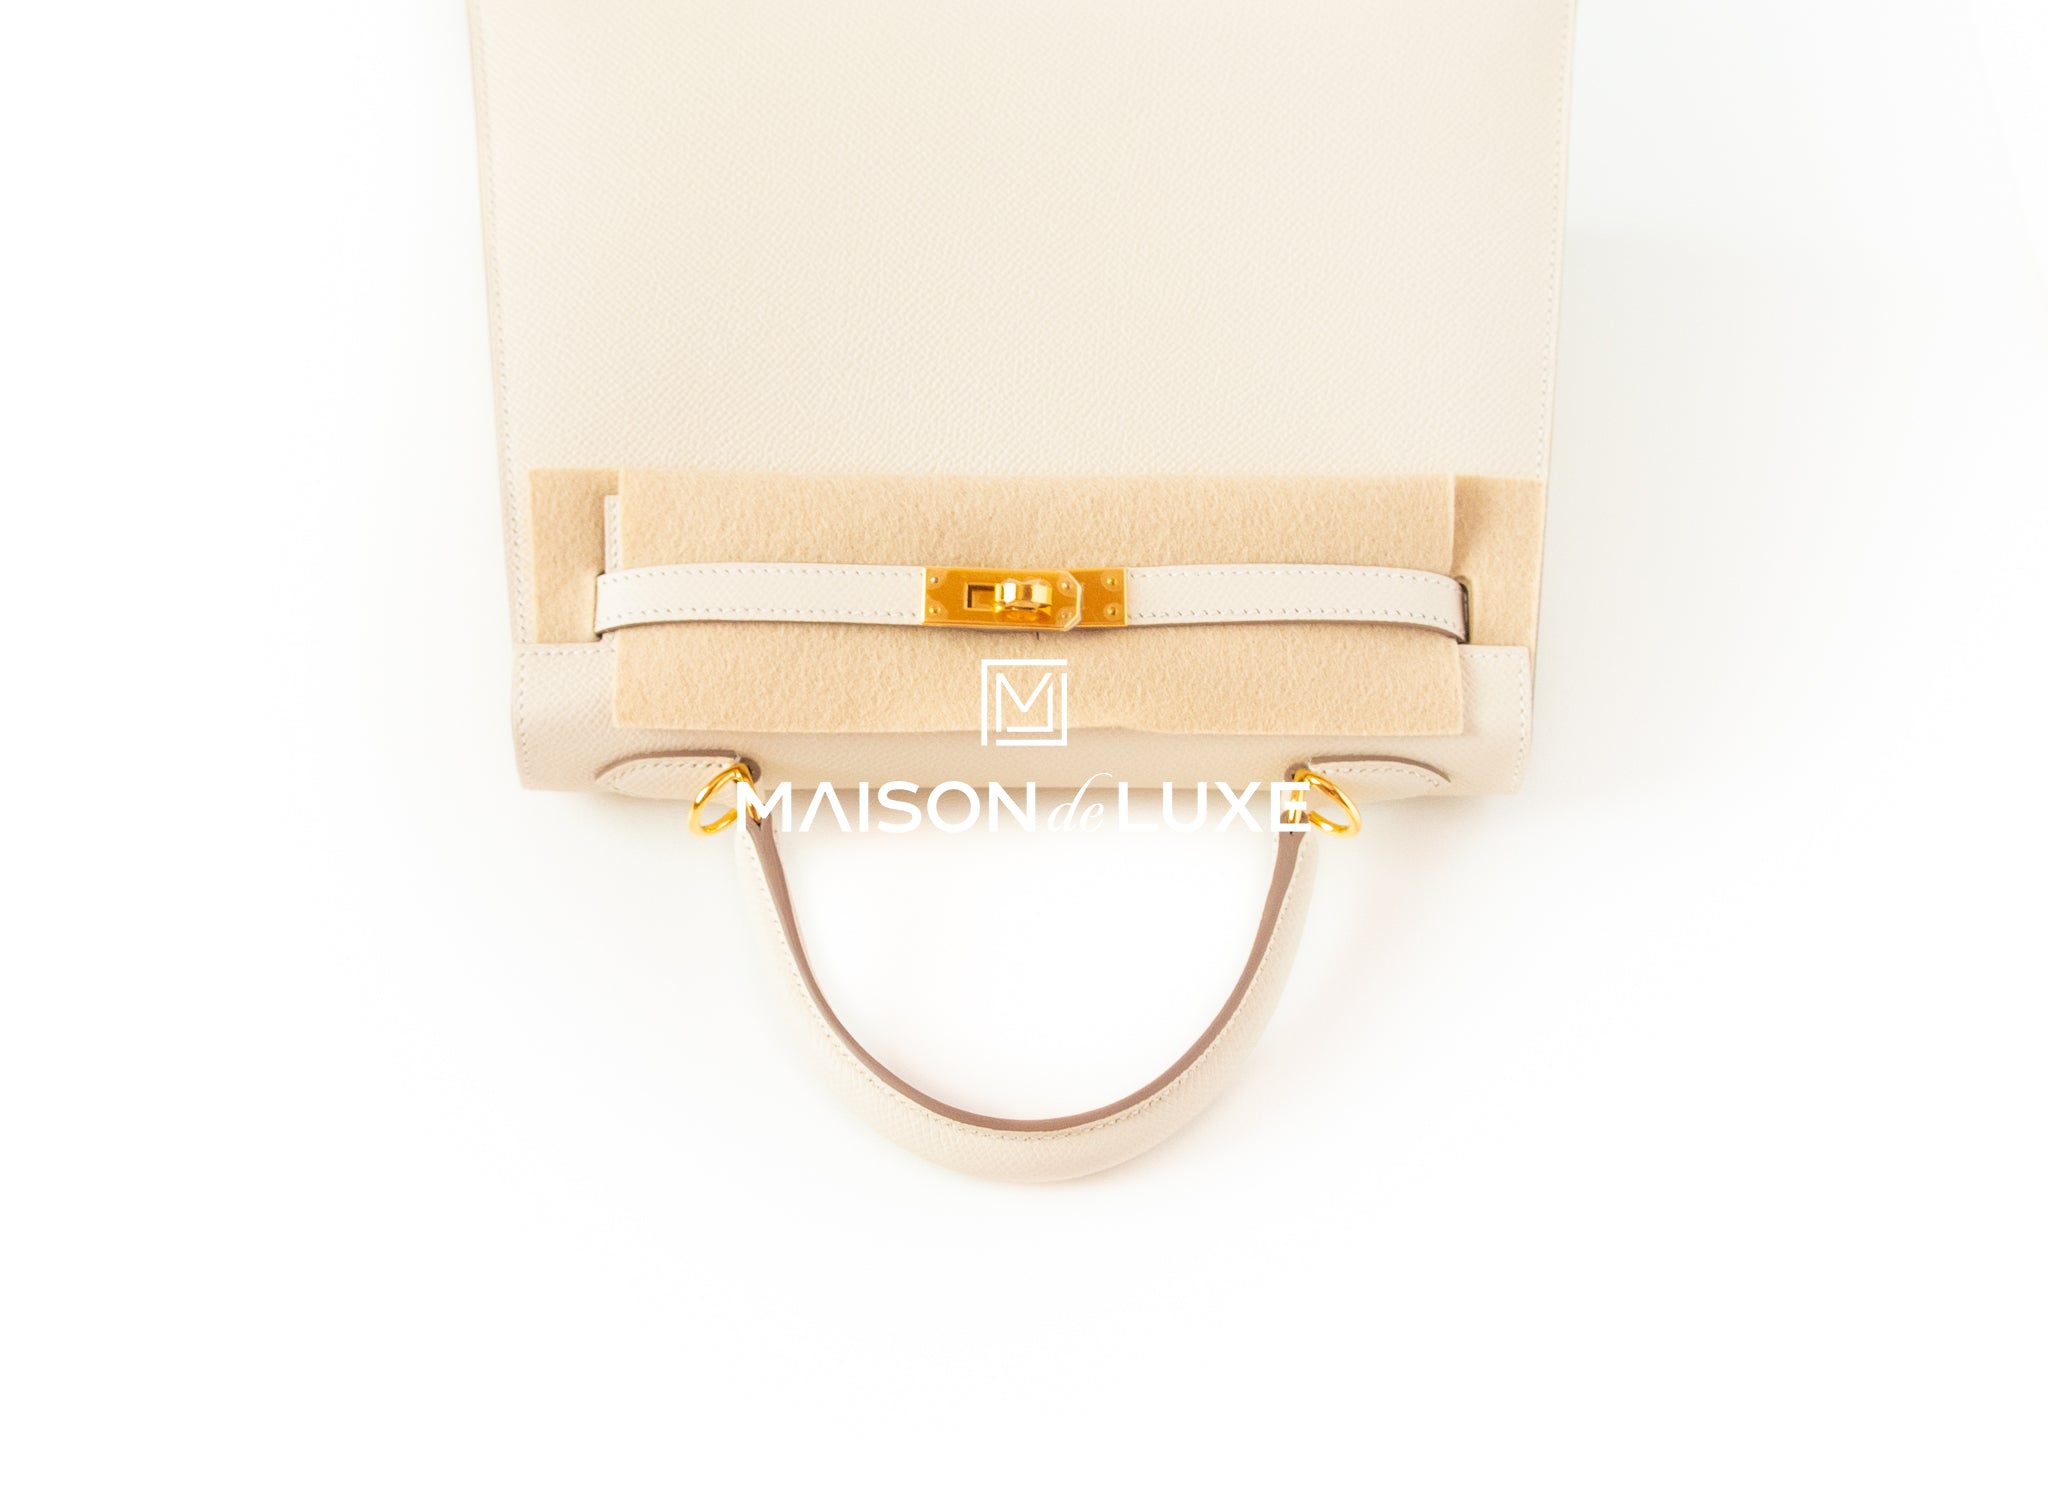 Hermes Craie Off White Sellier Epsom Gold Hardware Kelly 25 Handbag Bag